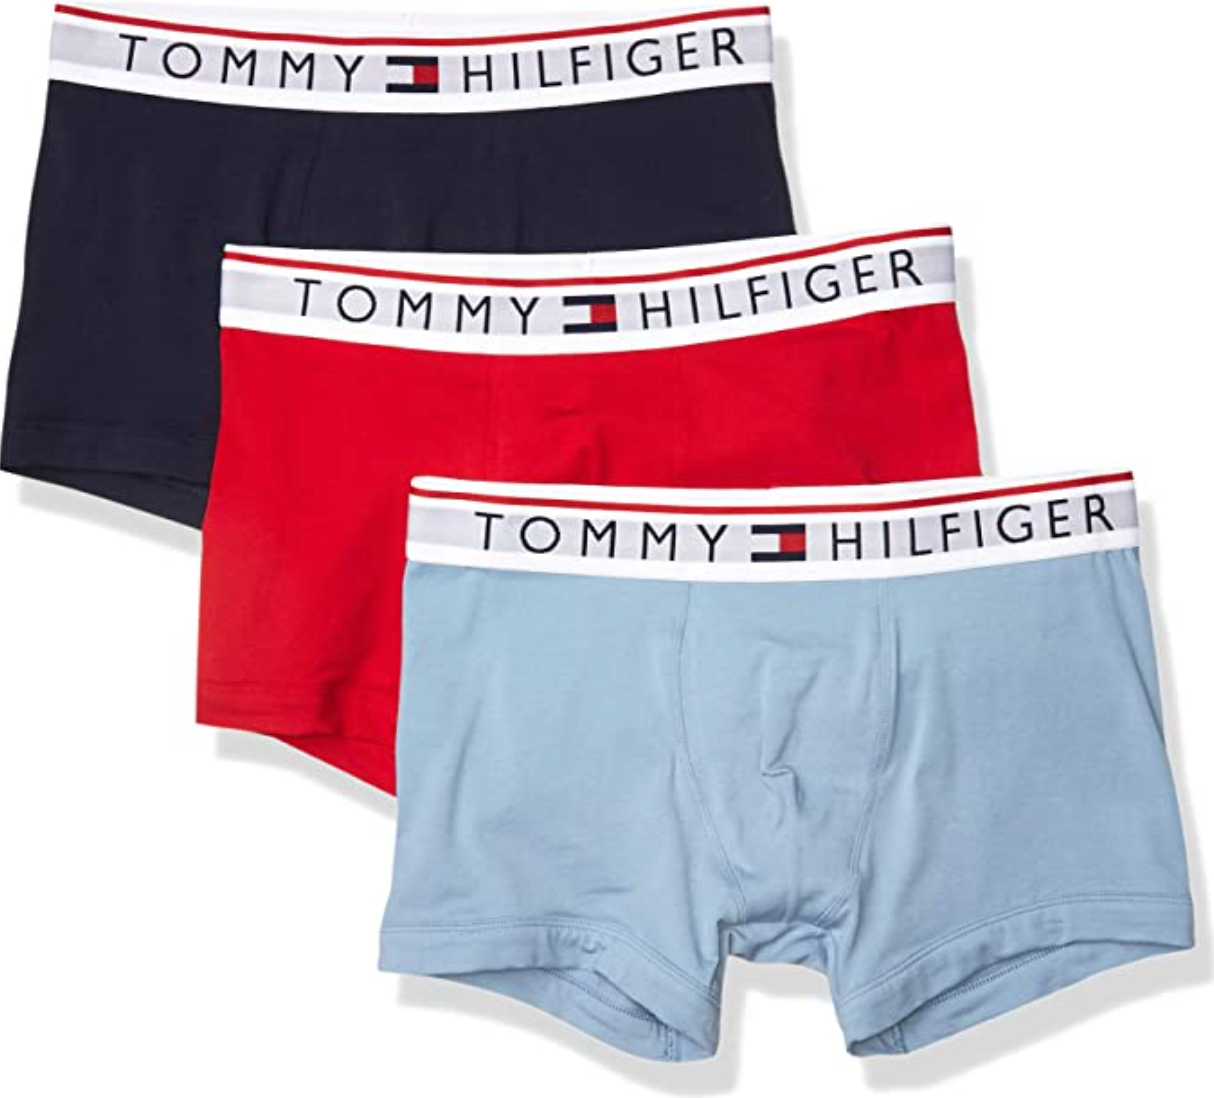 Tommy Hilfiger Men's Underwear Modern Essentials Multipack Trunks